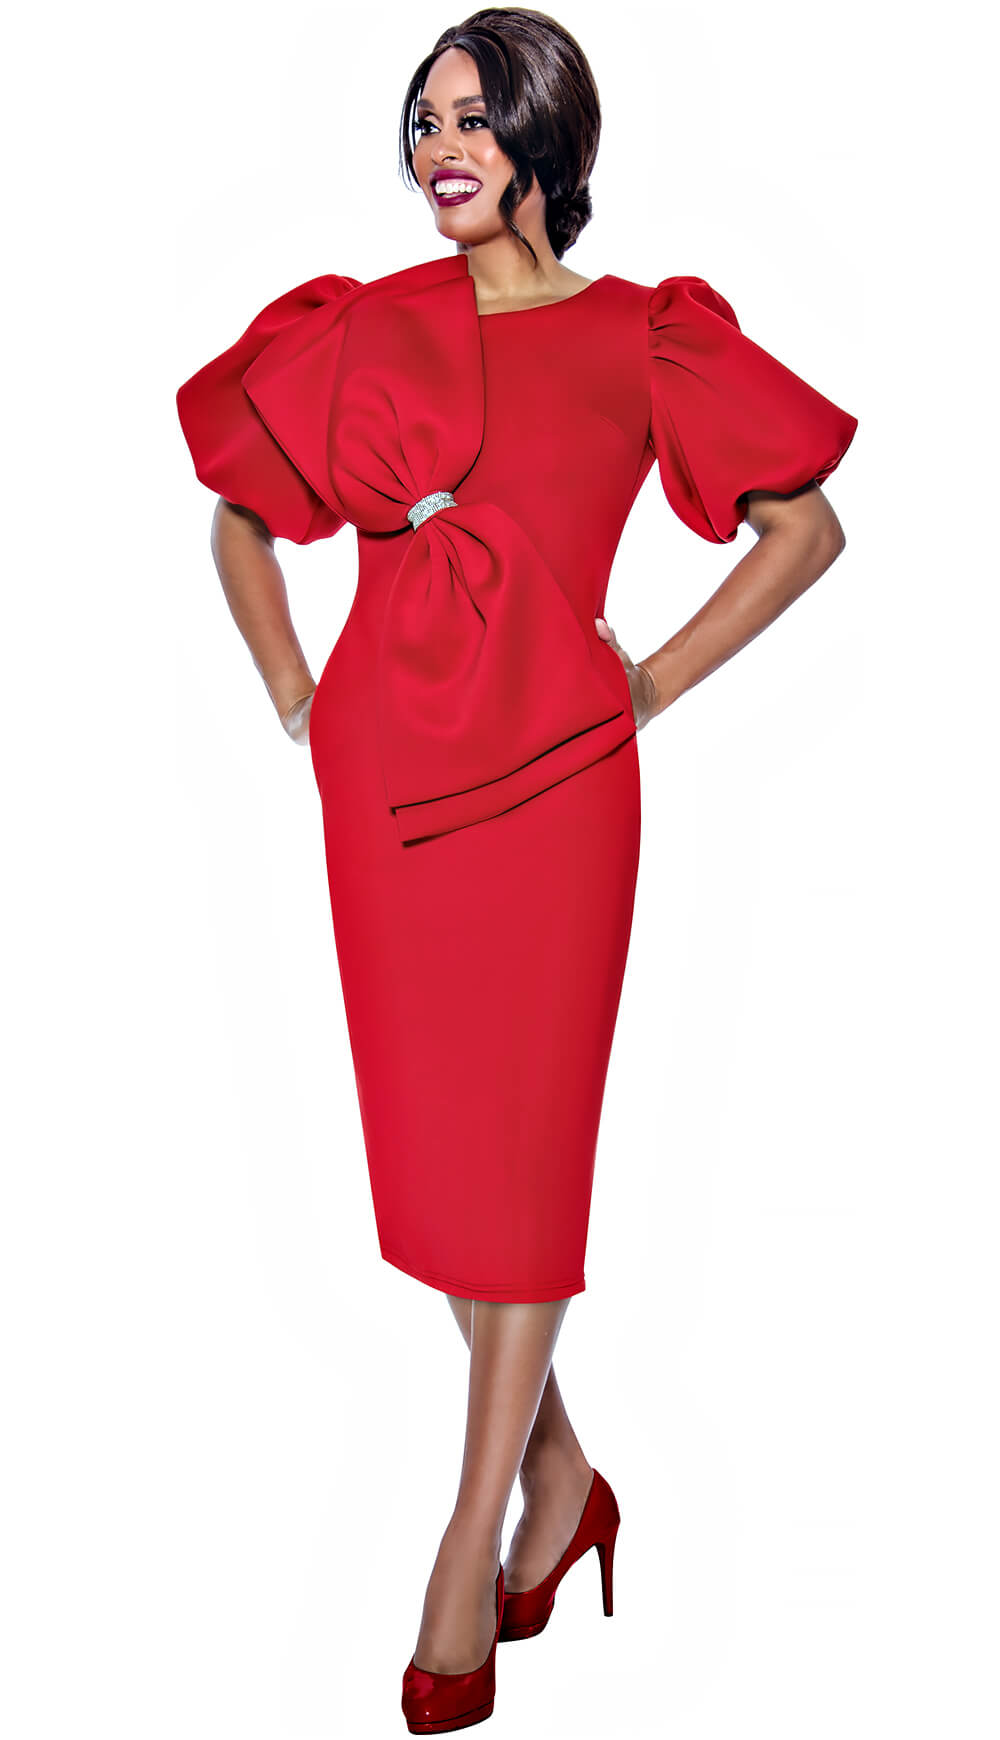 Dresses By Nubiano 1 Piece Scuba Dress 12351-RED Size 8-26W